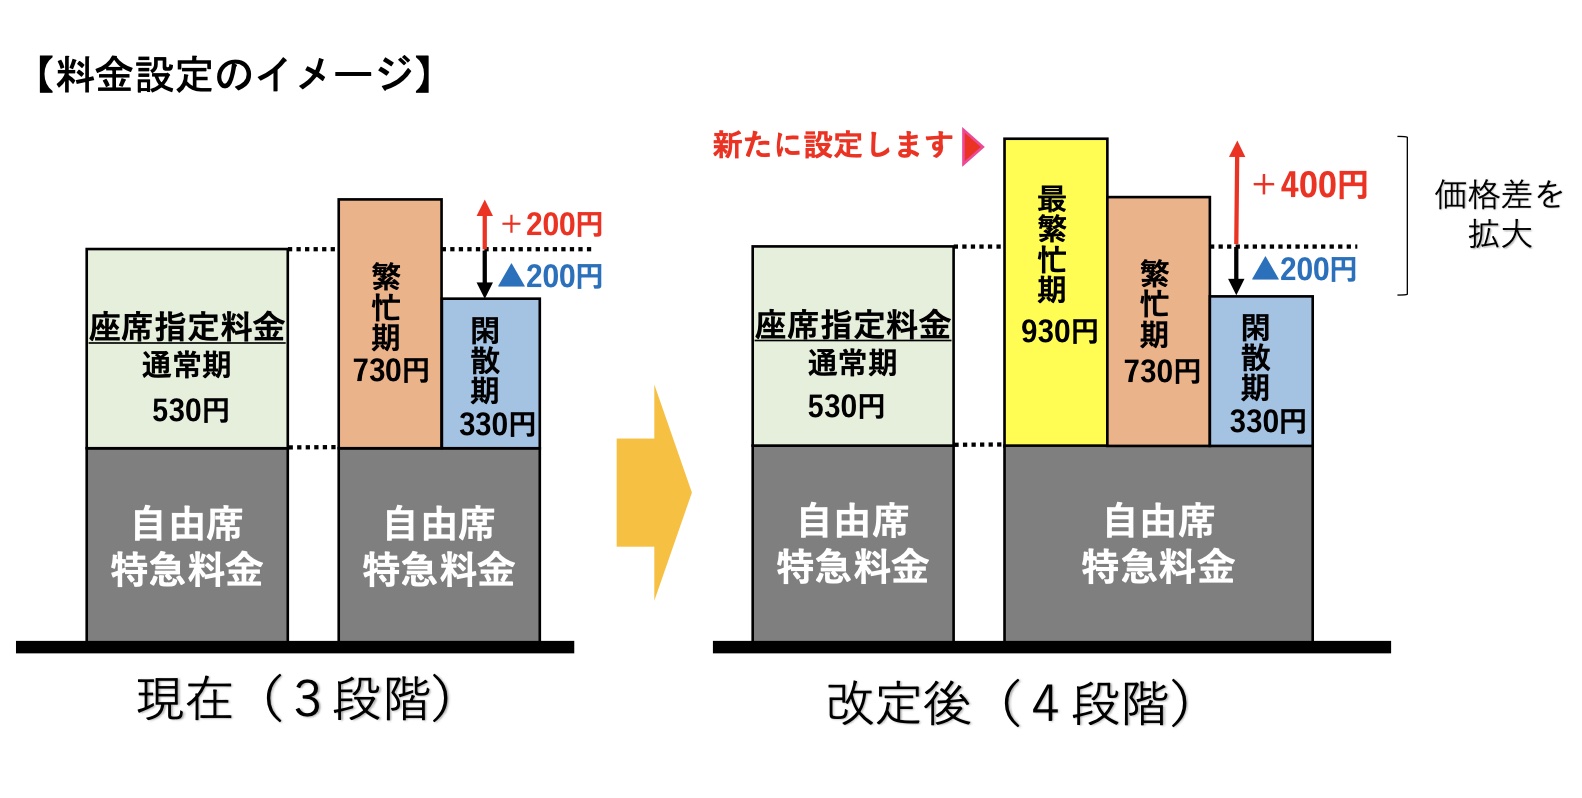 JR、新幹線など指定席特急料金の見直しで最繁忙期は400円増し。4段階制